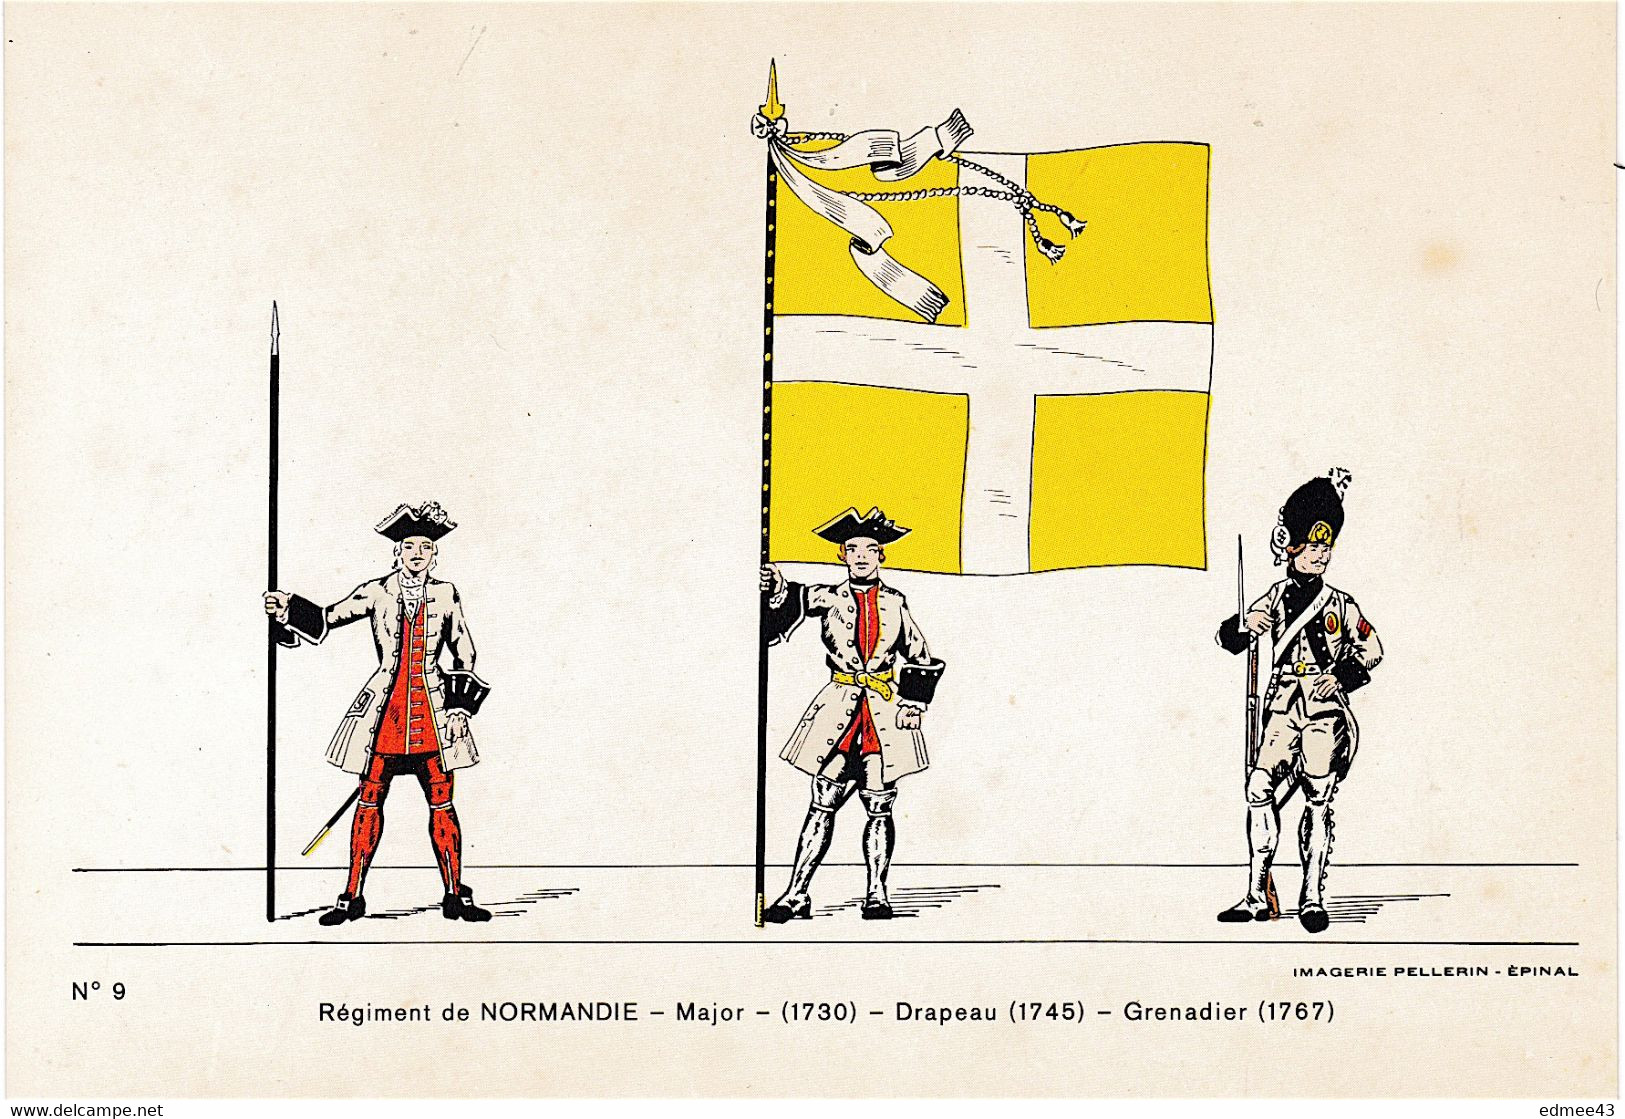 Jolie CP Série éditée En 1978 Imagerie Pellerin, N°9 Régiment De Normandie,18e Siècle - Bandiere